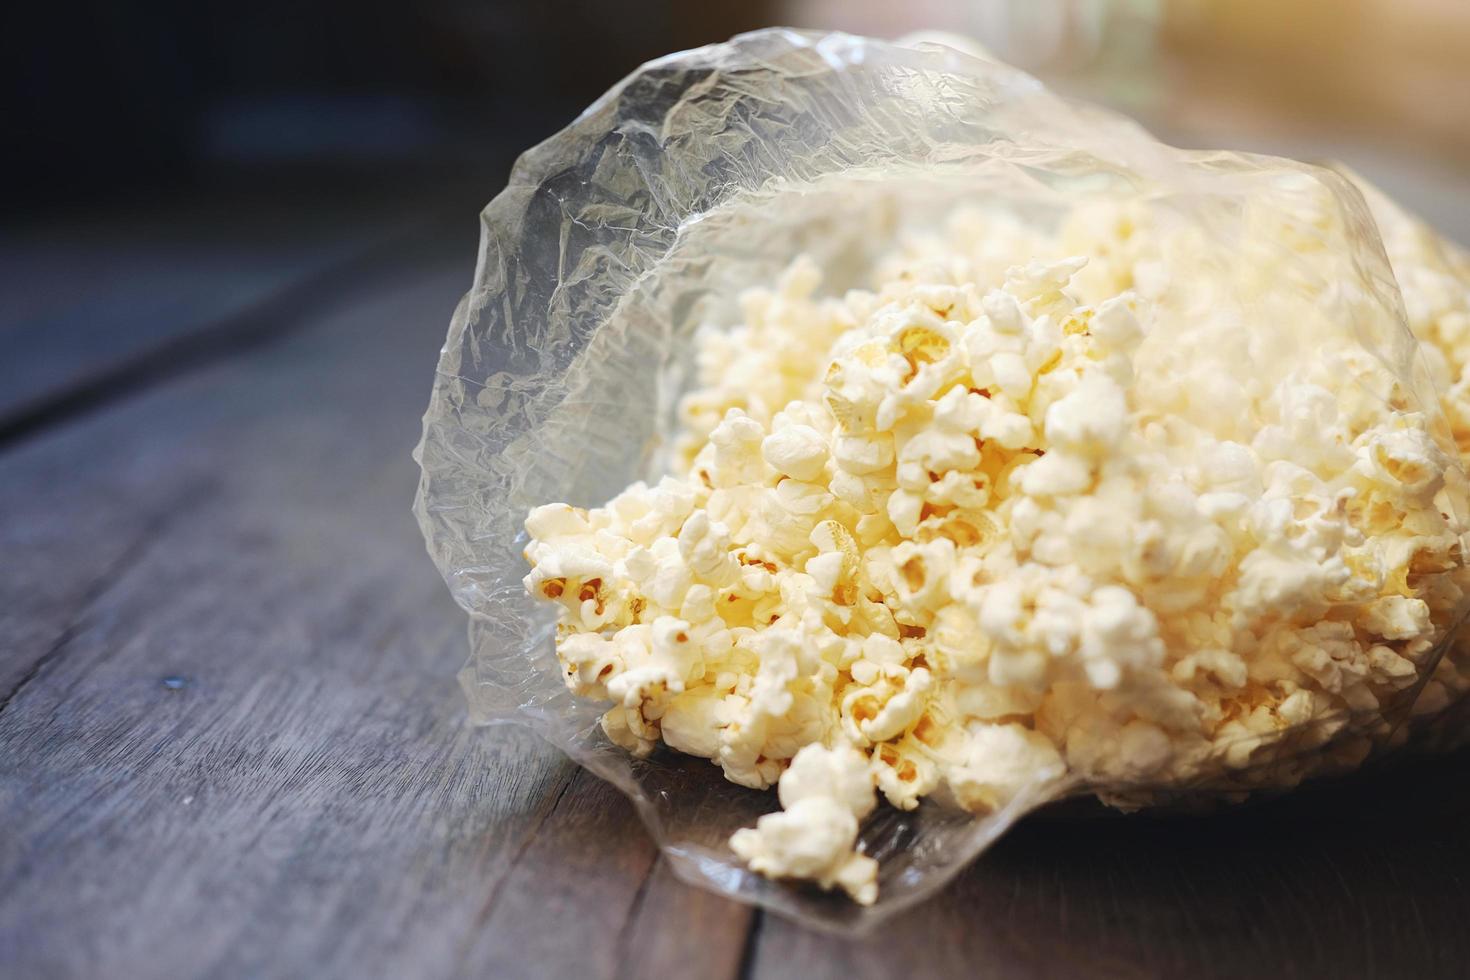 deliziosi popcorn dolci in sacchetti di plastica. foto